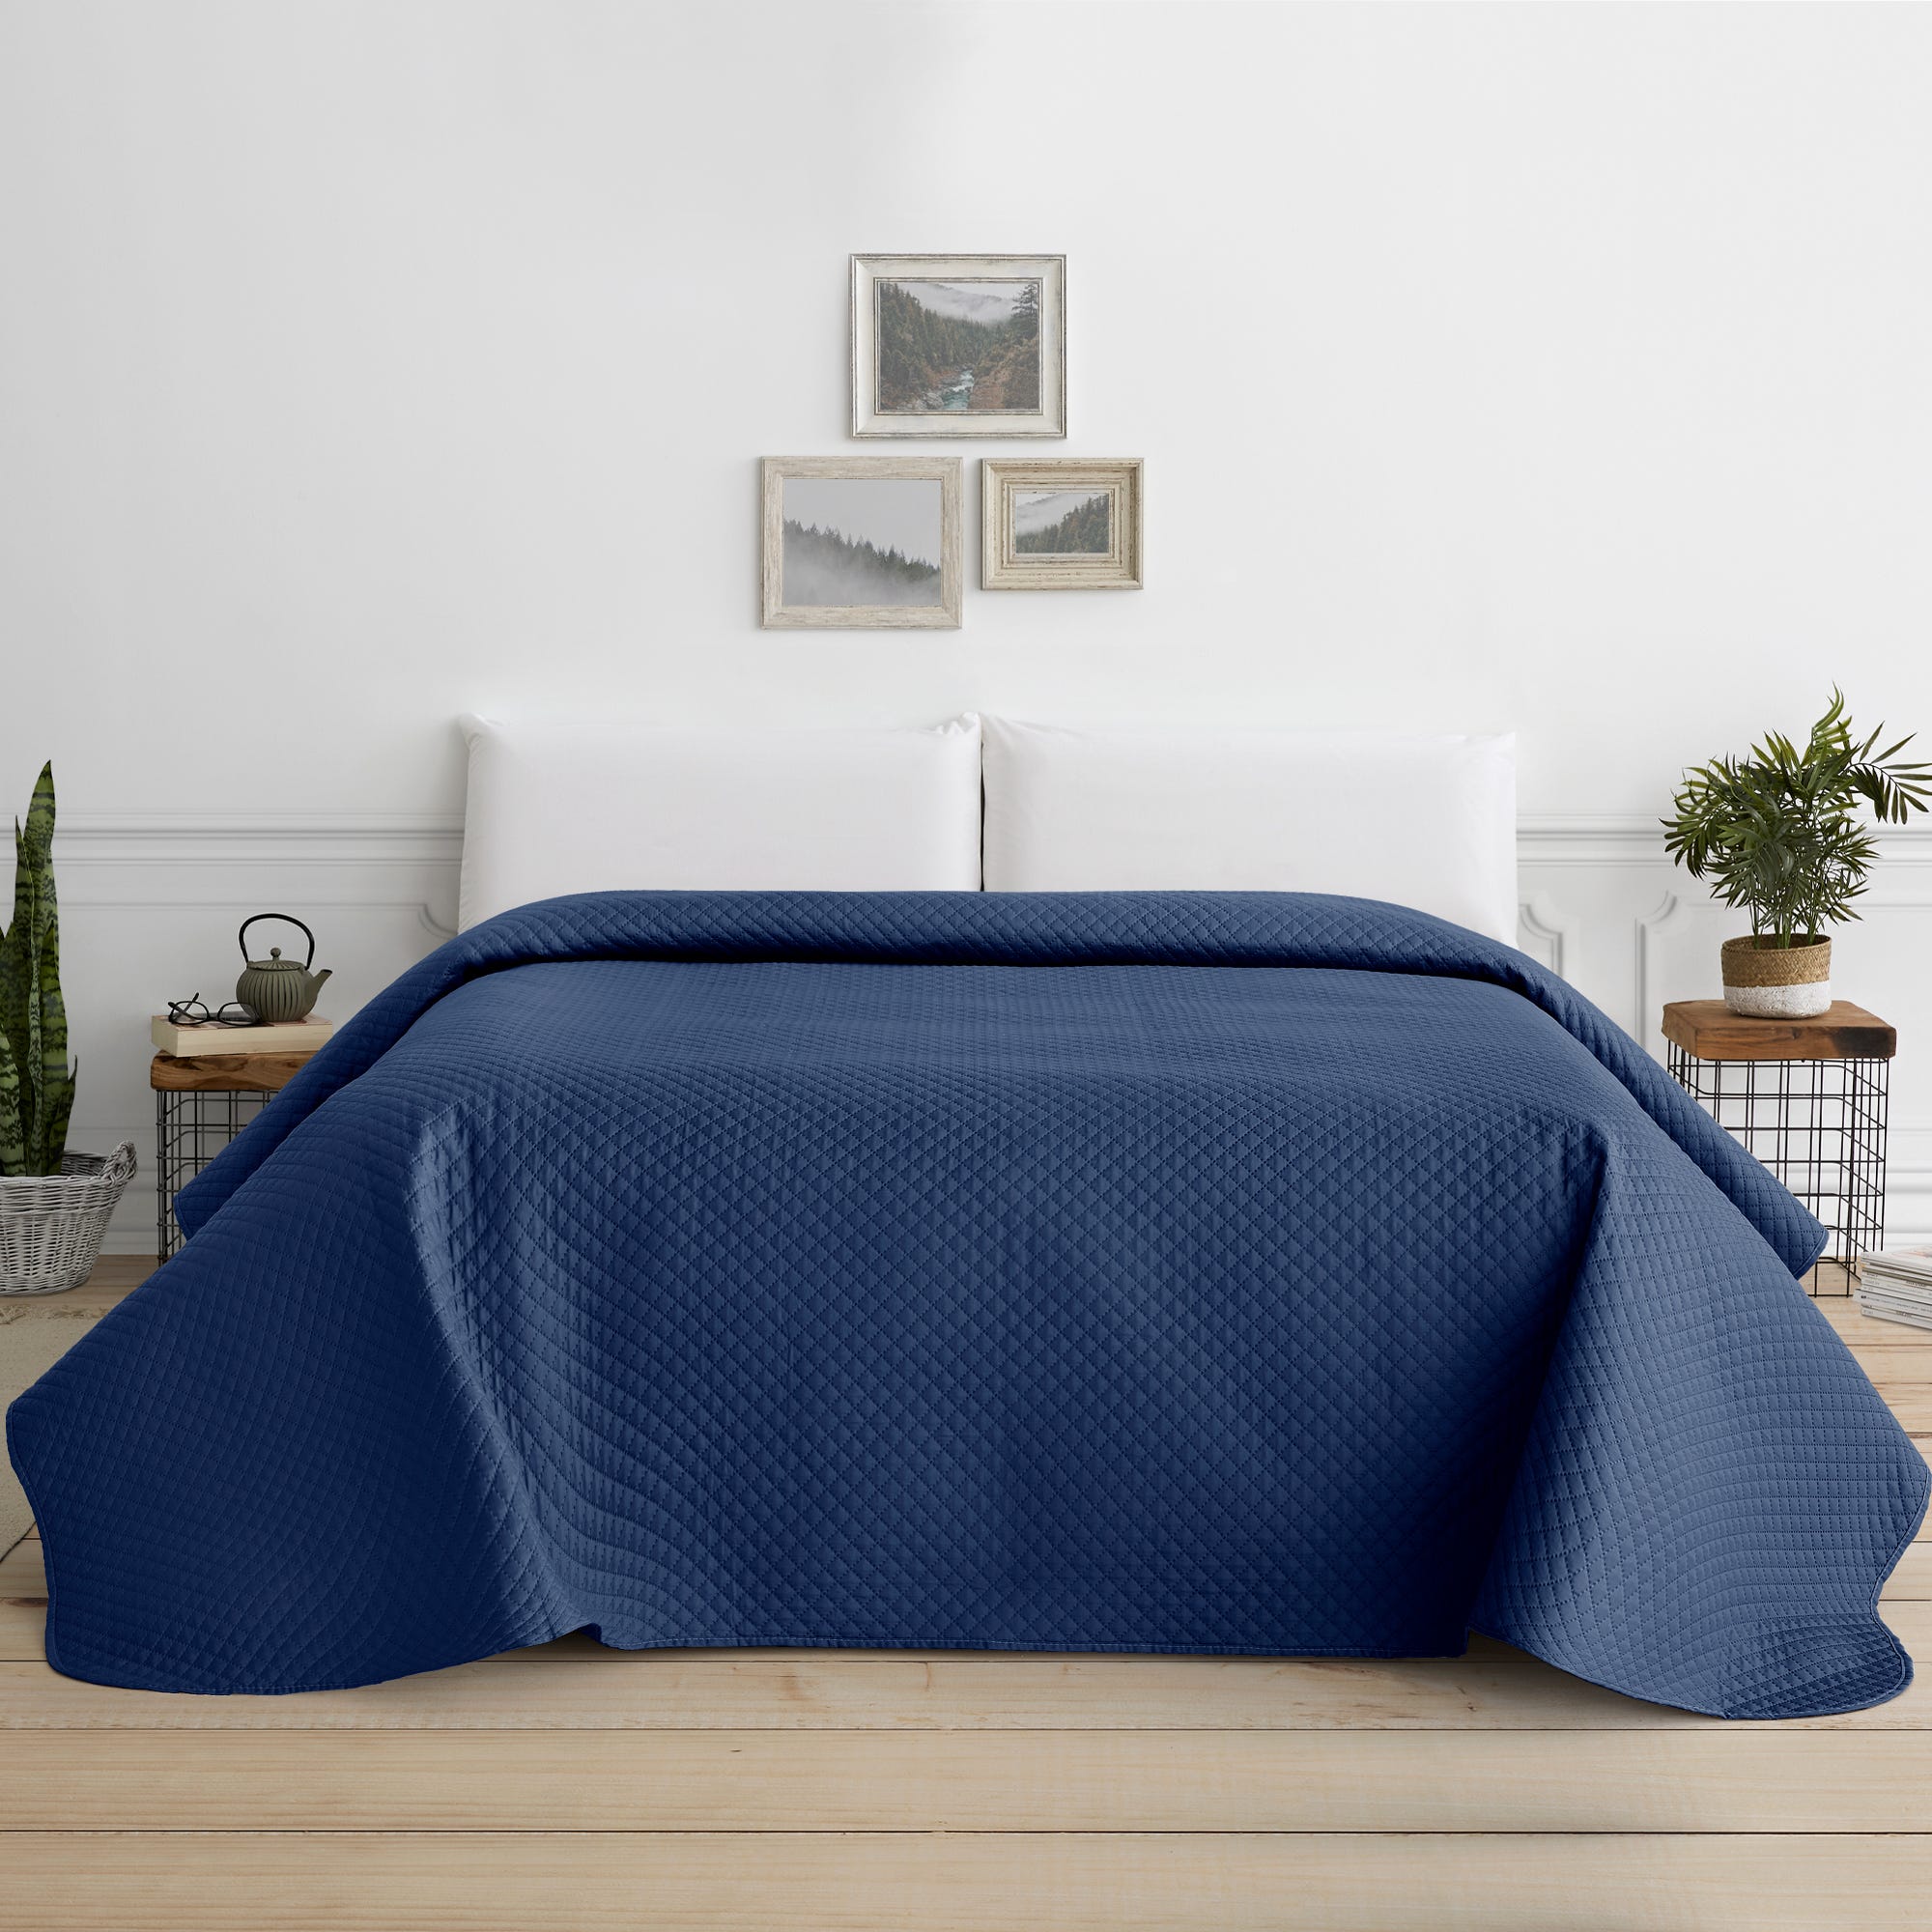 Colcha Bouti para Cama Verano. Colcha cubre cama acolchada reversible  Rombos. Cama 150 - 250 x 260 cm. Color Azul Marino.